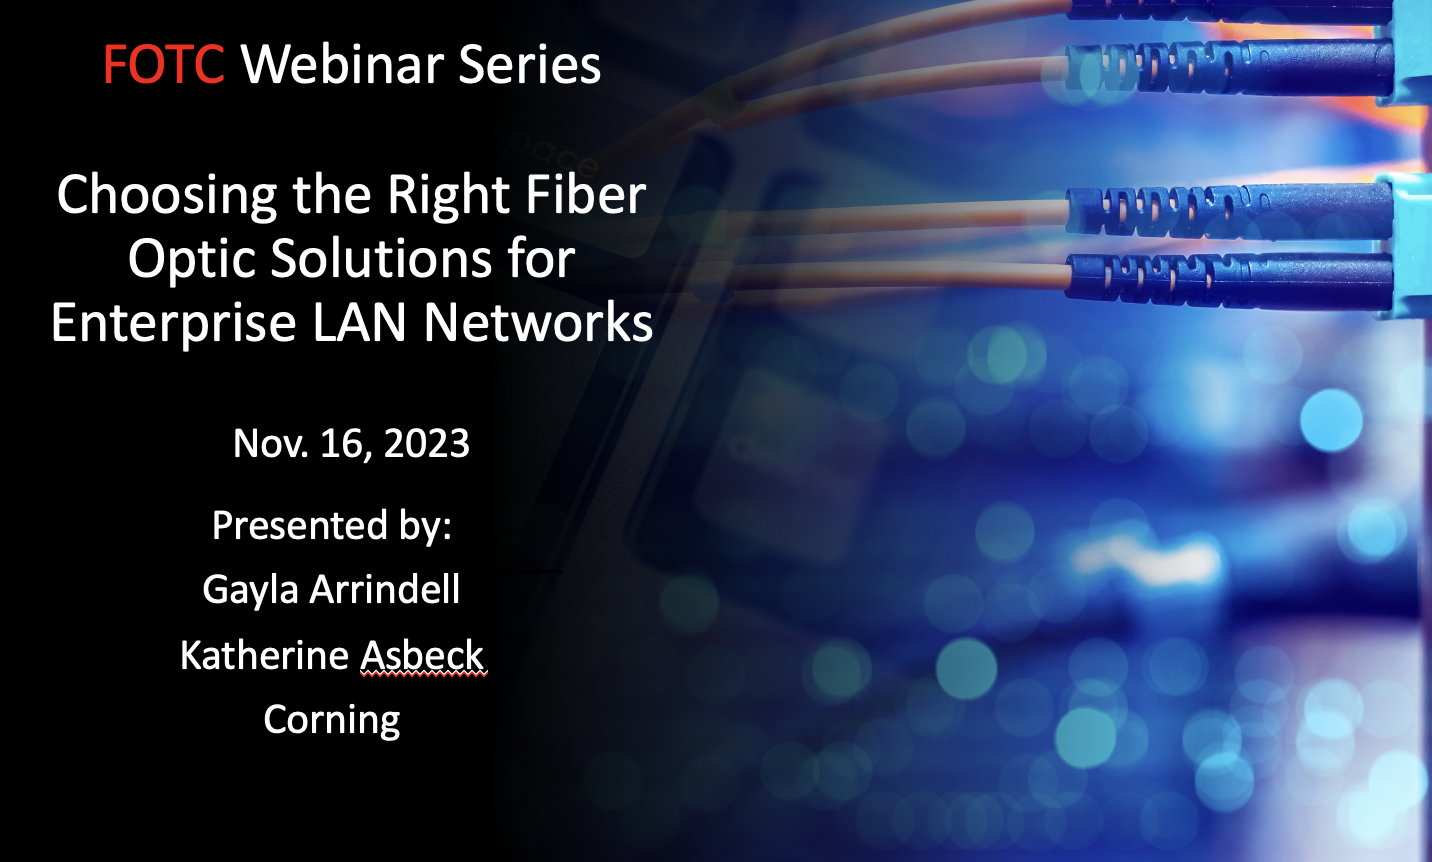 Choosing the Right Fiber Optic Solutions for Enterprise LAN Networks